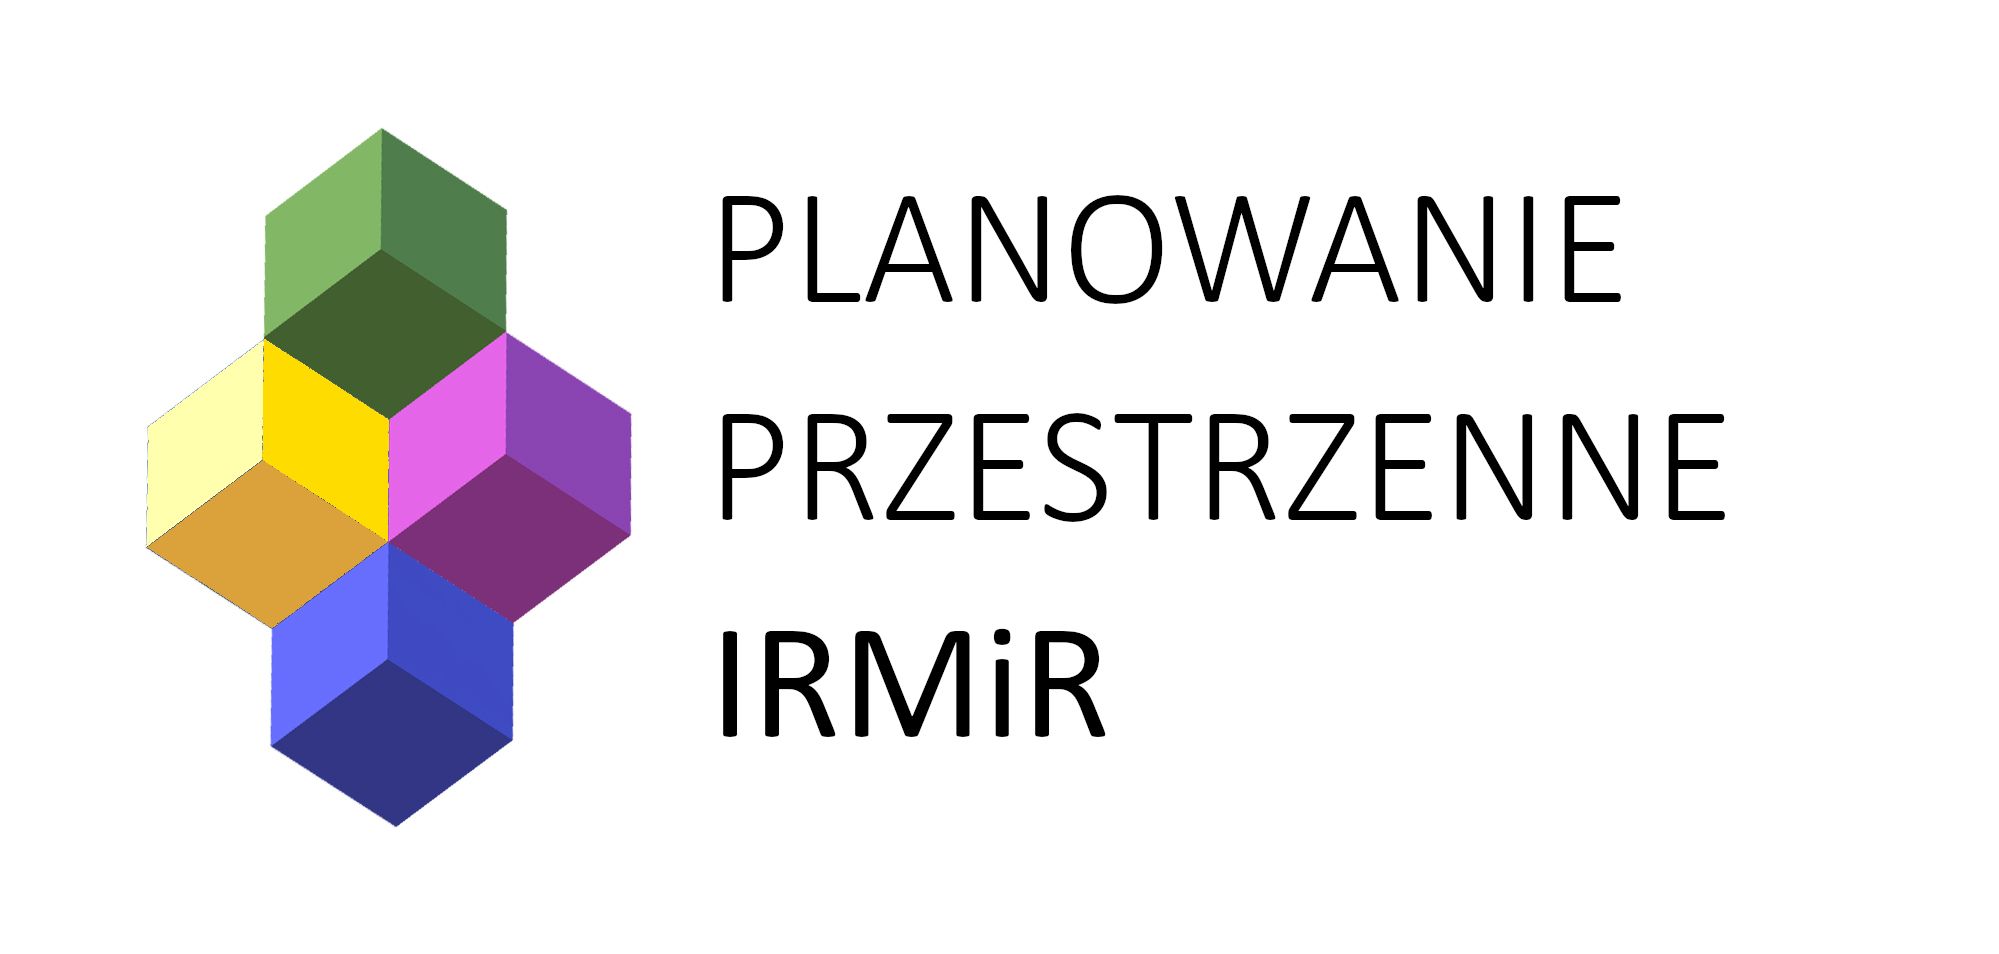 Planowanie przestrzenne IRMiR (logo: sześciany w kolorach nawiązujących do przeznaczeń terenów i innych oznaczeń stosowanych w planowaniu przestrzennym)